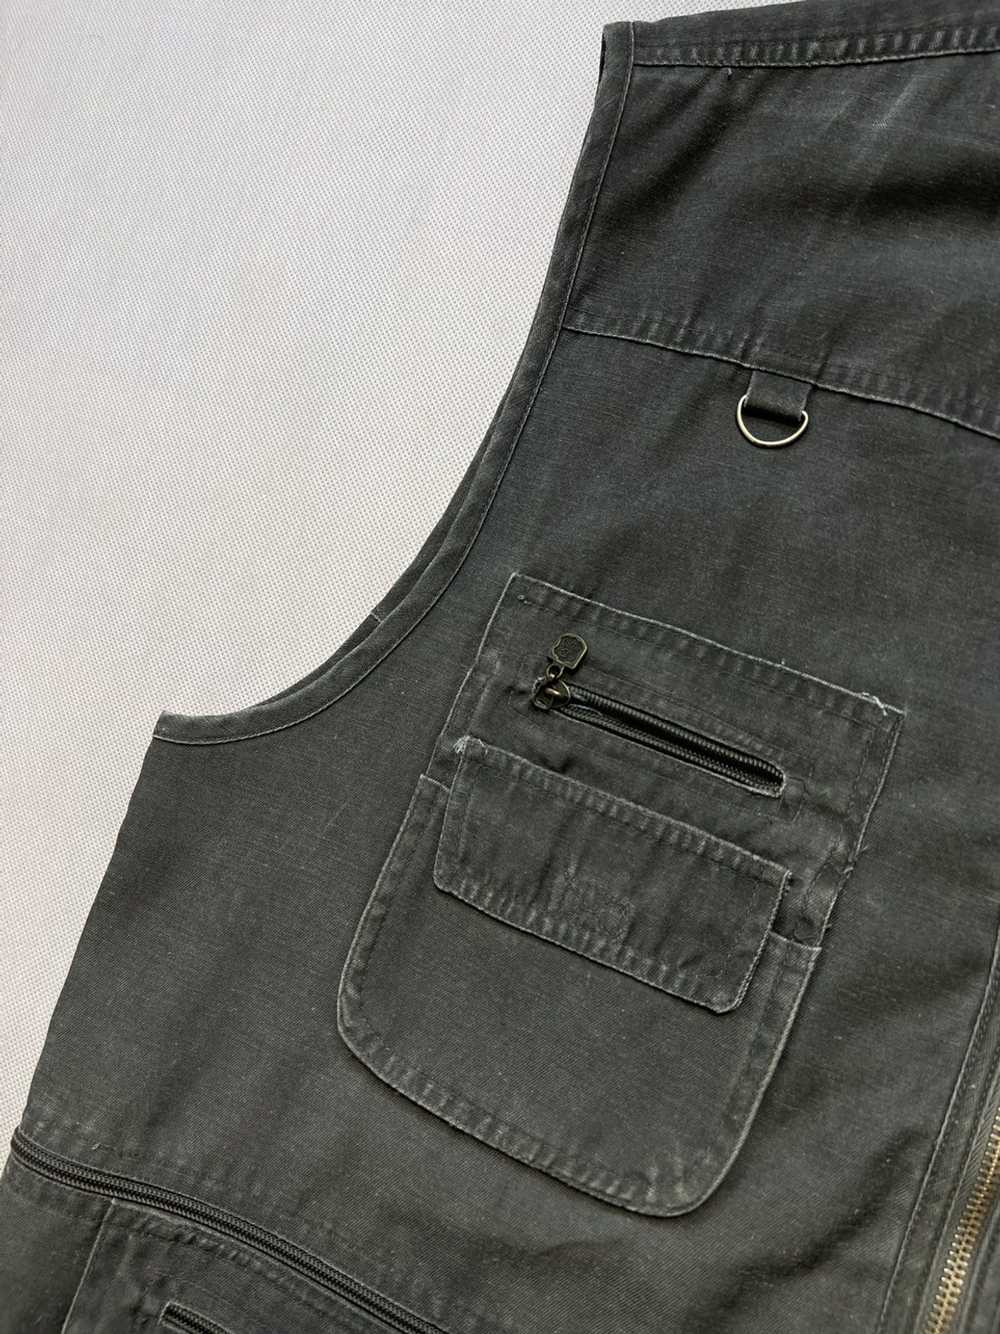 Military × Vintage Vintage vest multi pocket army… - image 4